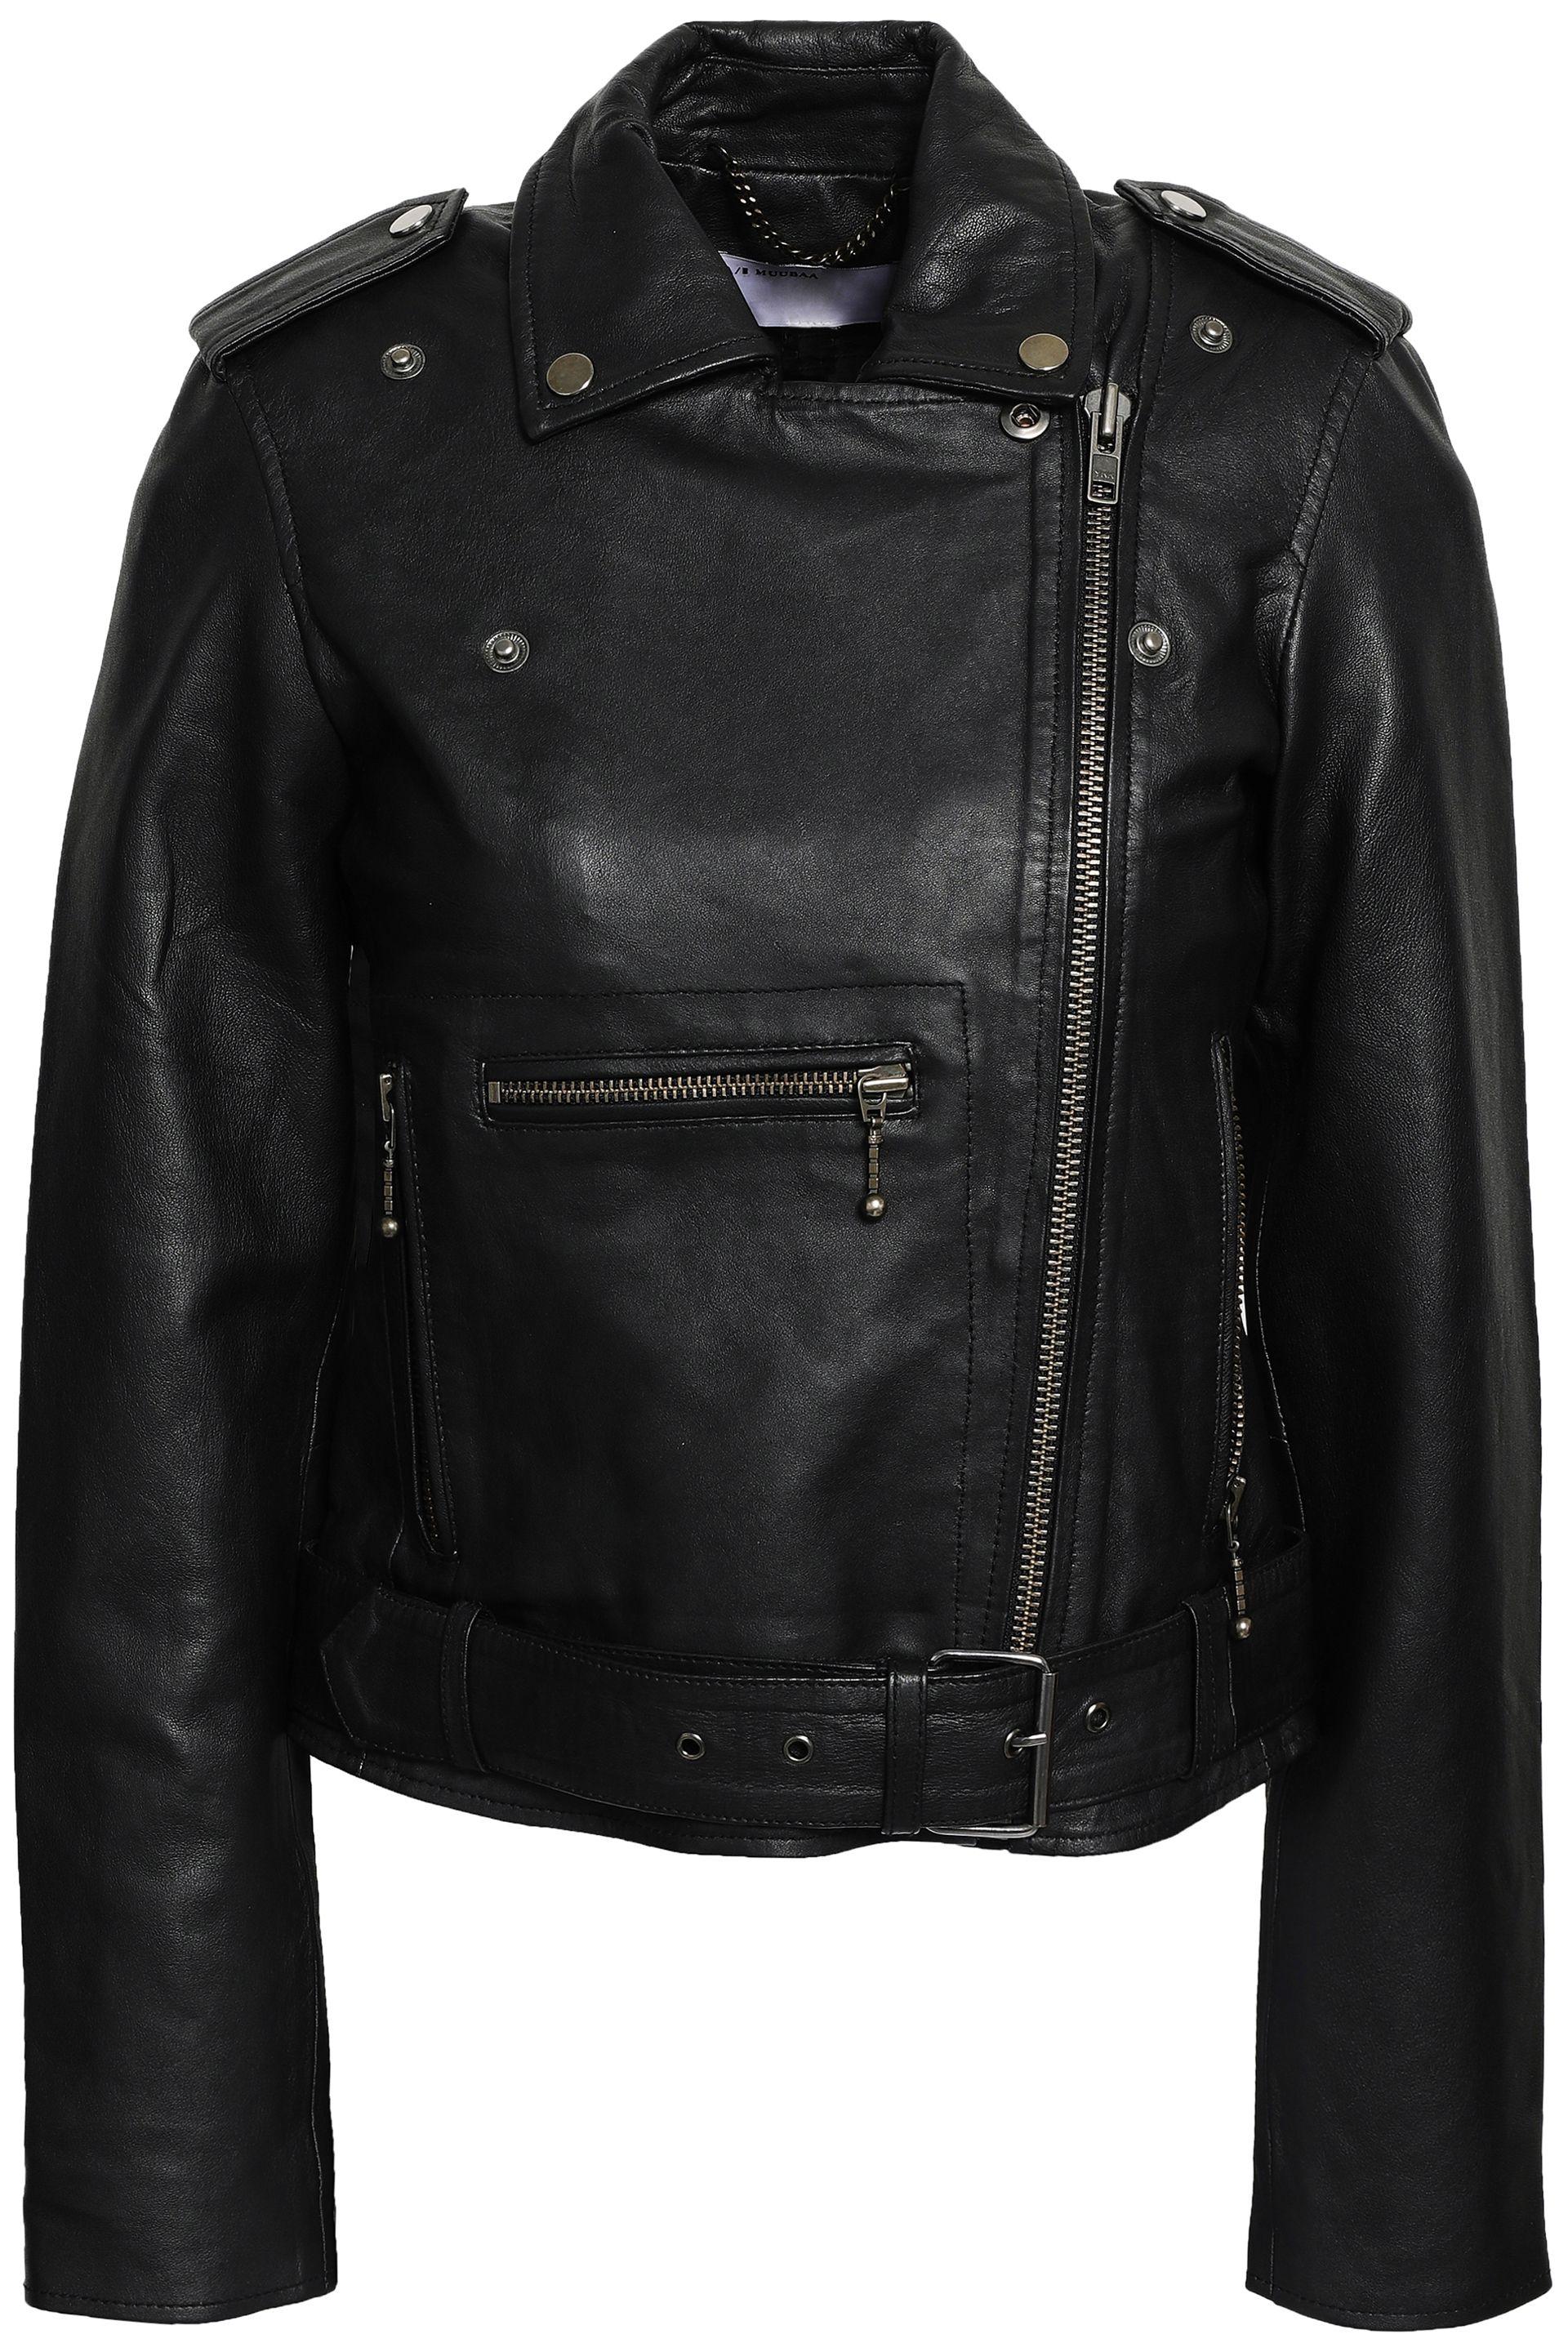 Muubaa Leather Biker Jacket Black - Lyst